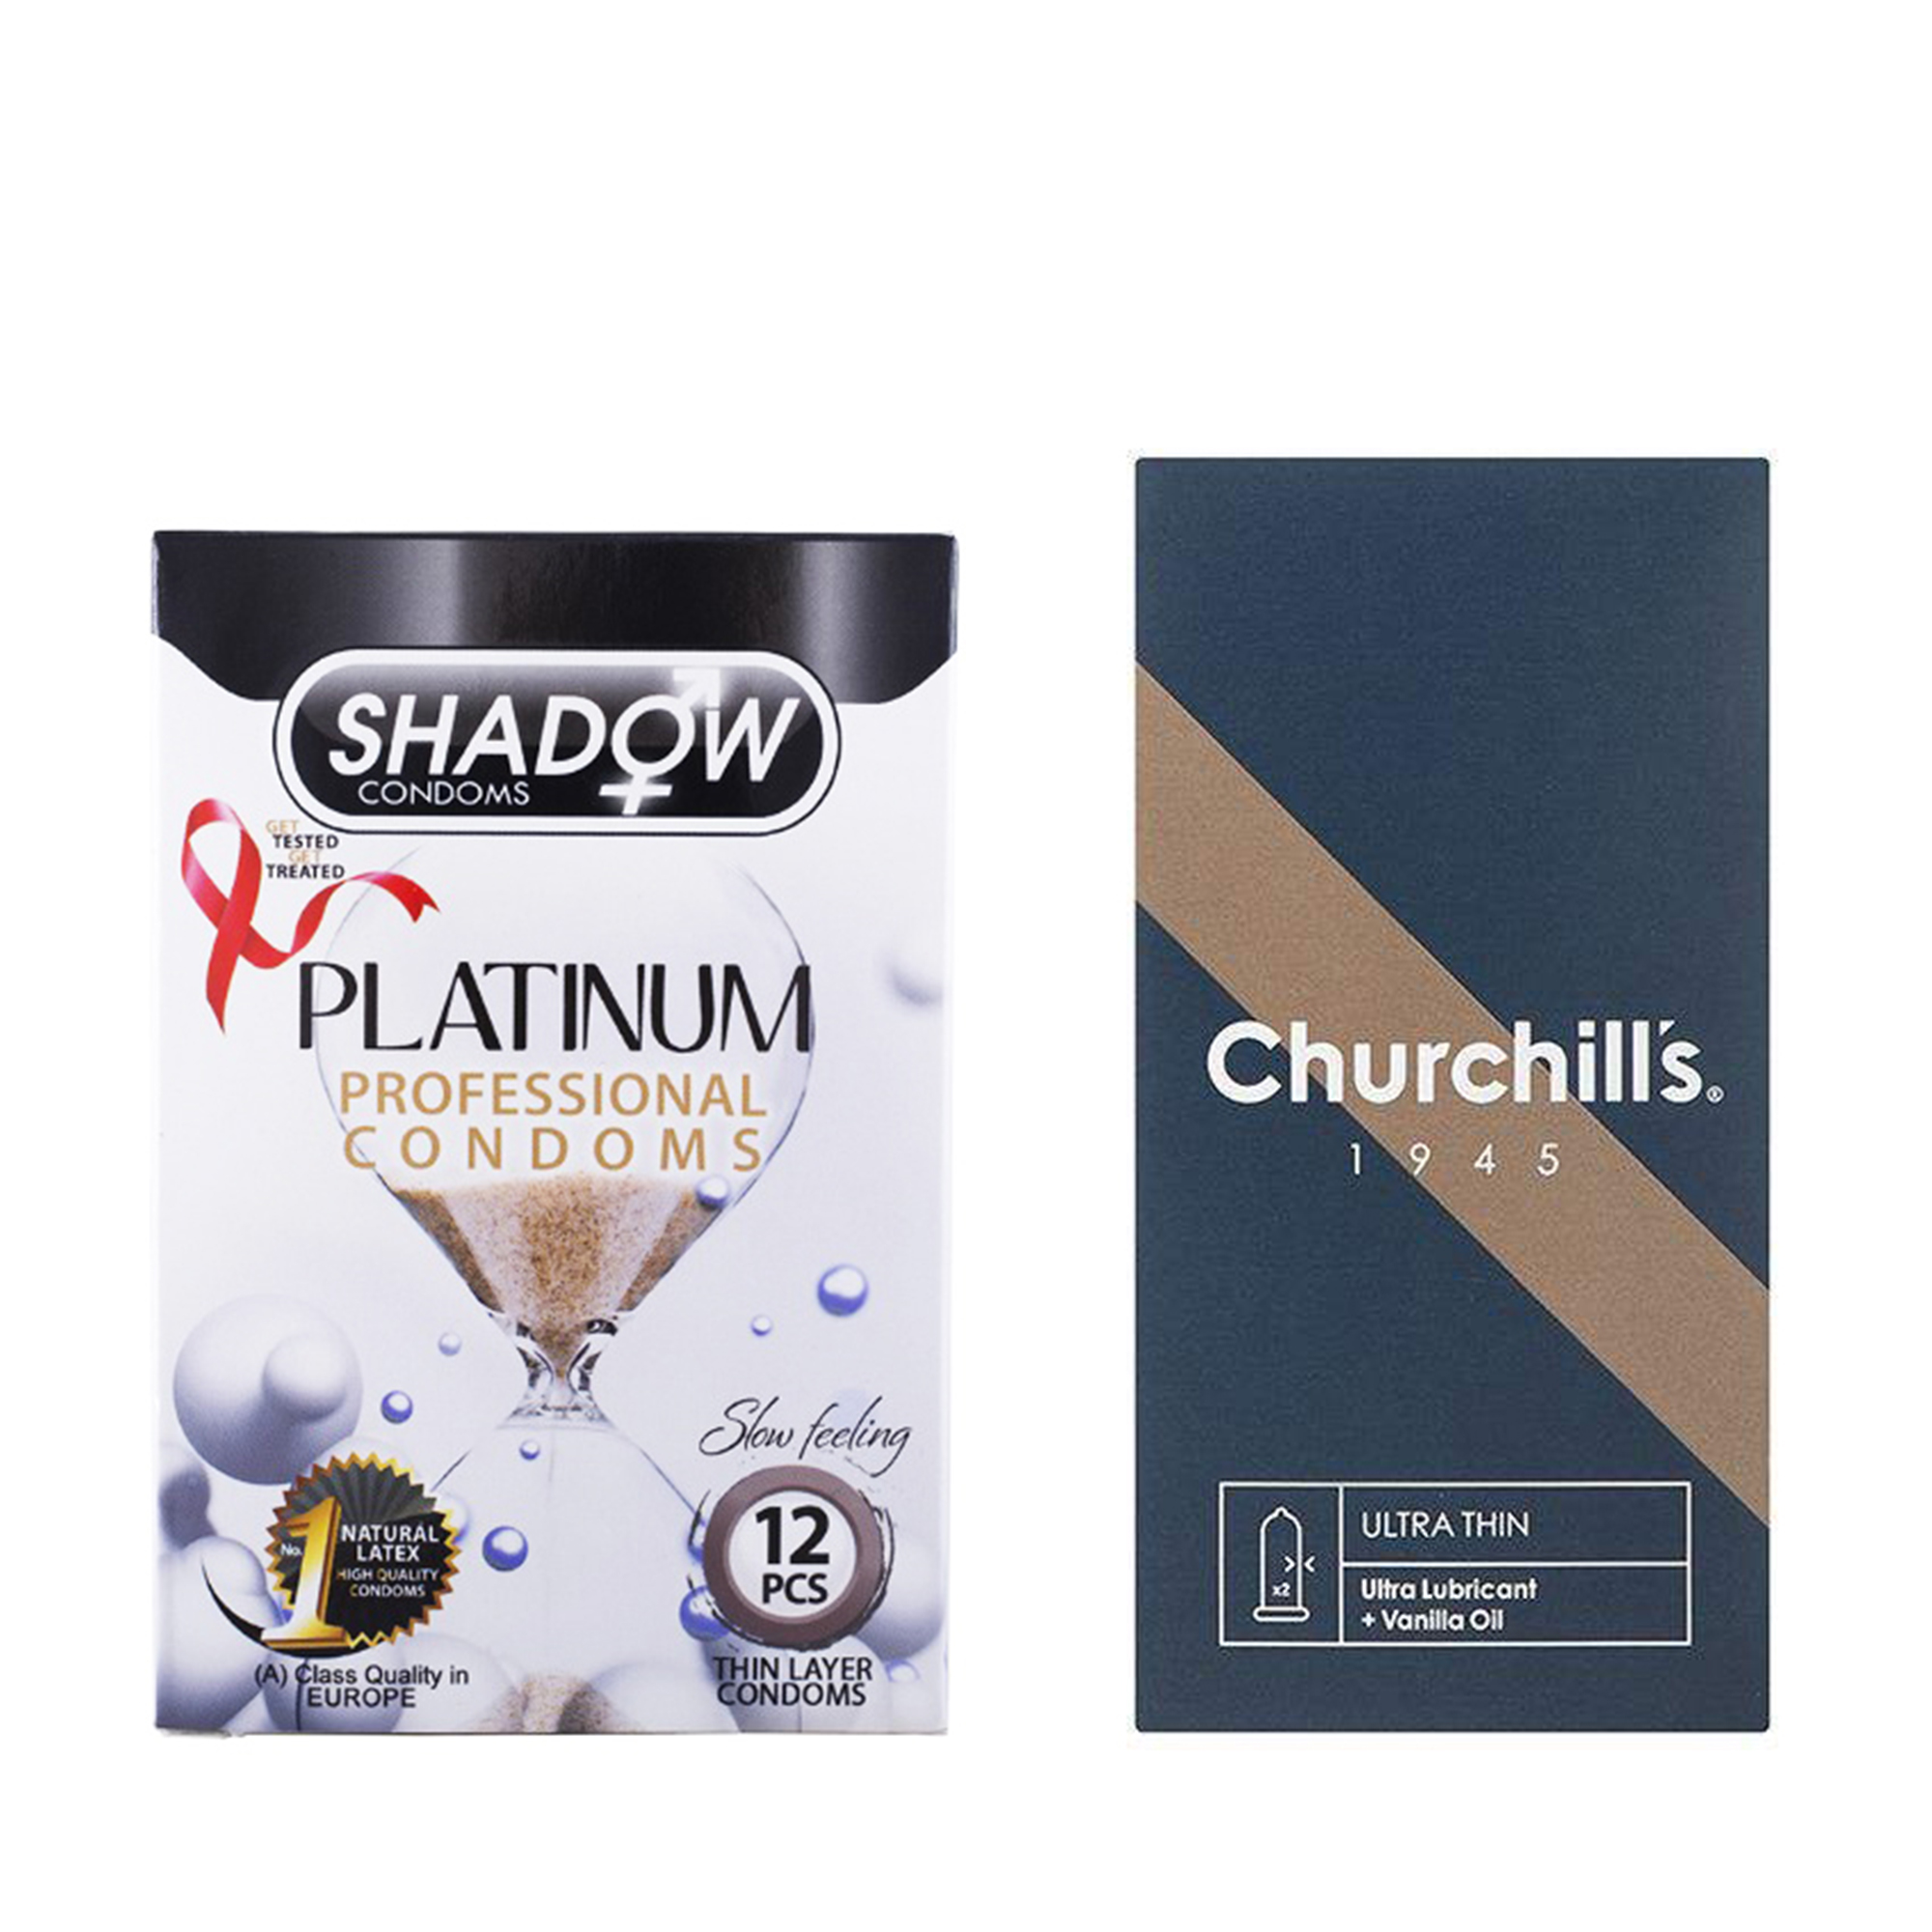 کاندوم چرچیلز مدل Ultra Thin بسته 12 عددی به همراه کاندوم شادو مدل Platinum بسته 12 عددی